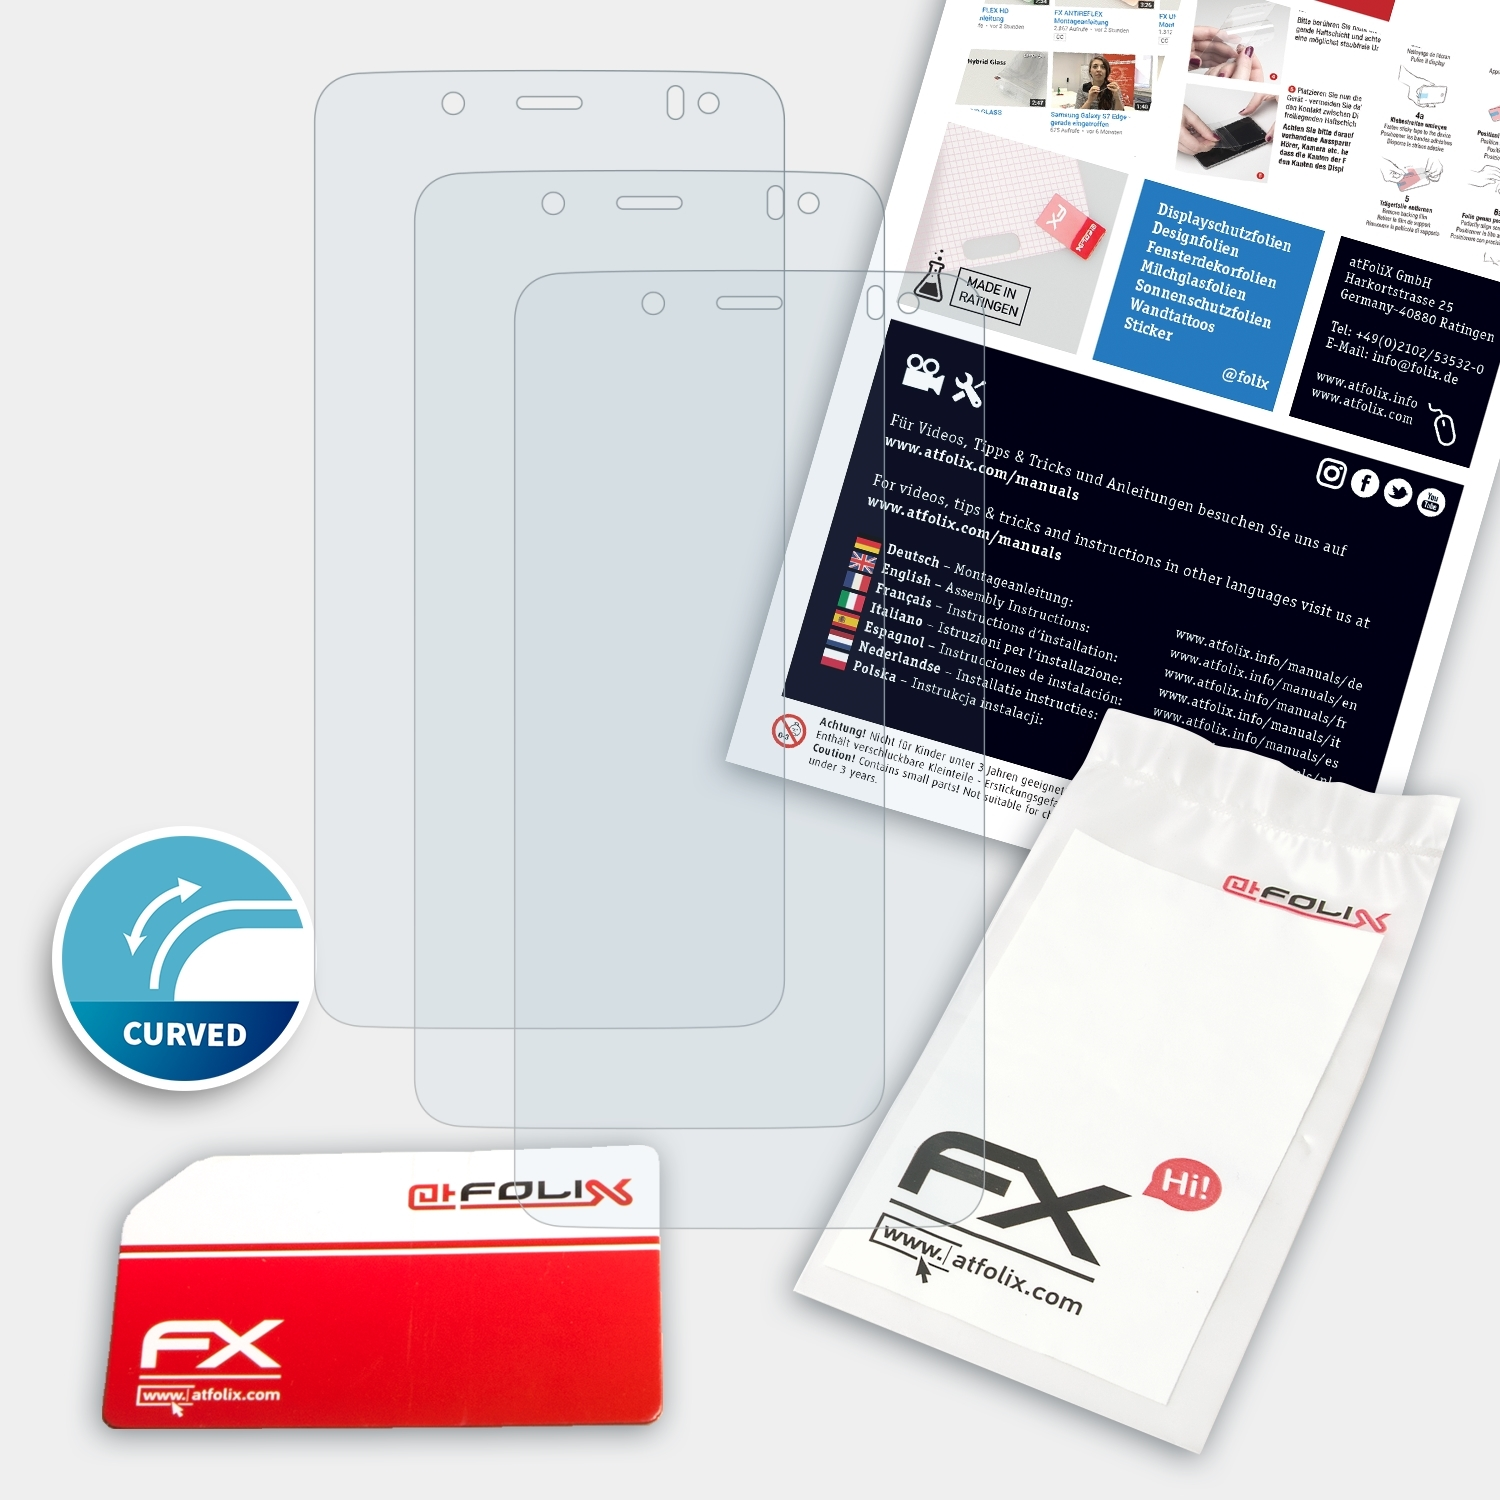 ATFOLIX Aquaris 3x Plus) V bq FX-ActiFleX Displayschutz(für